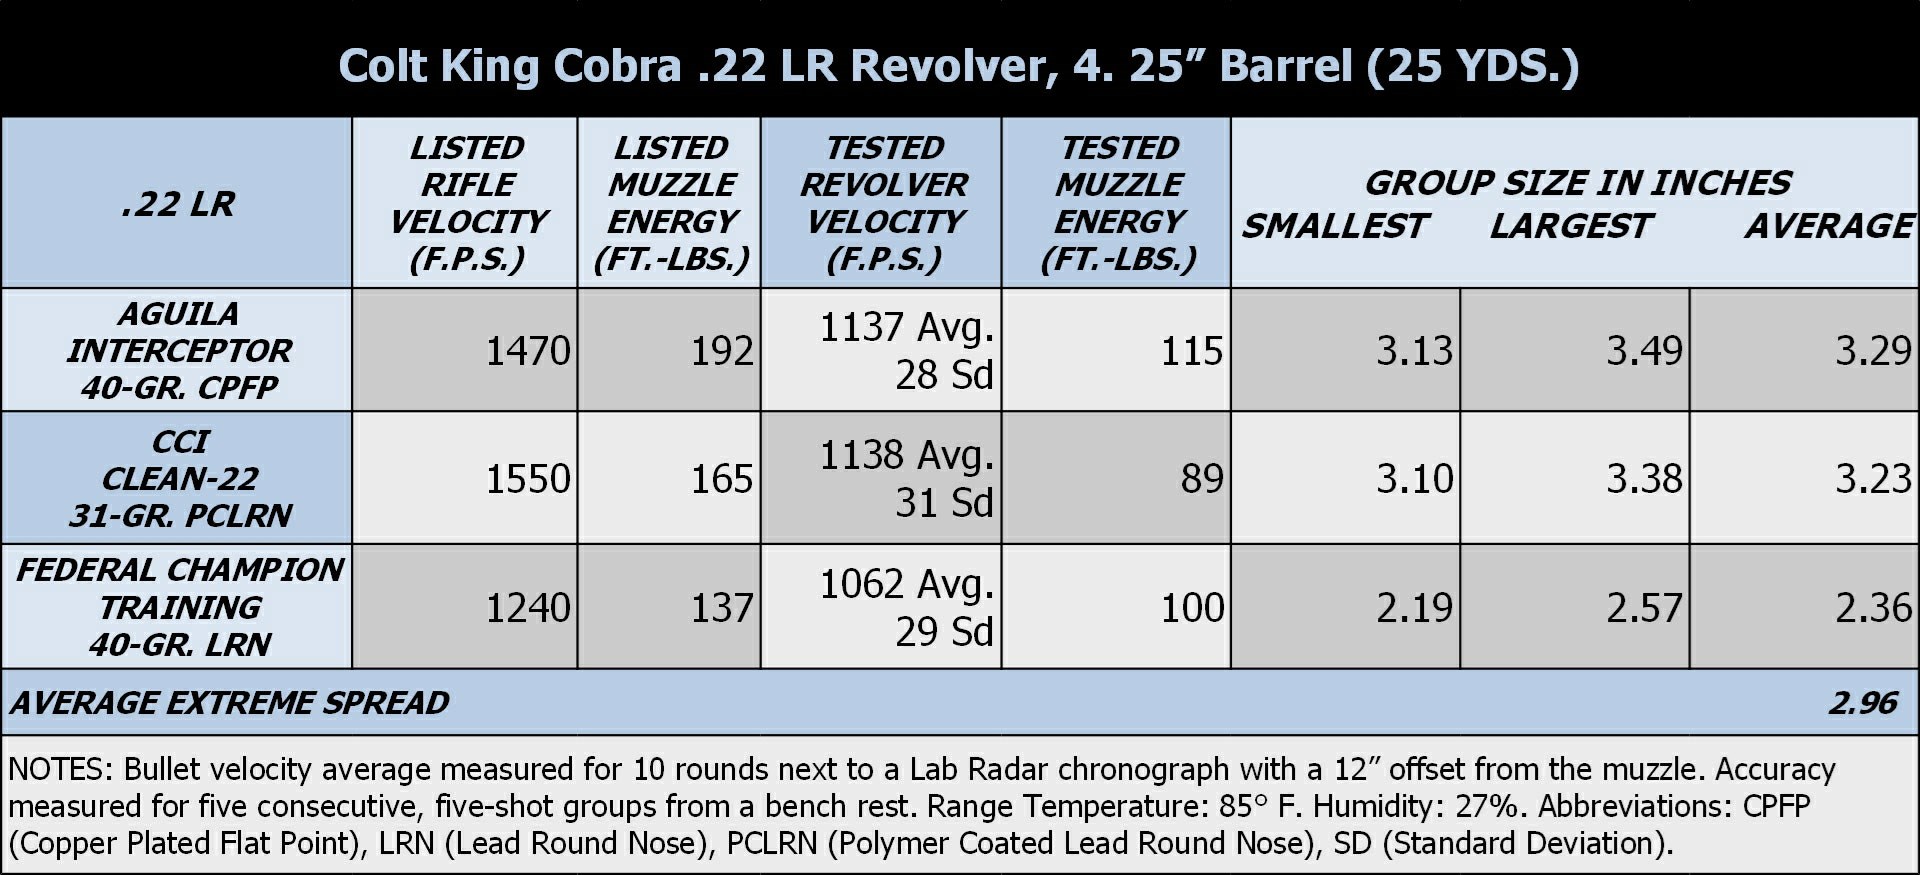 Colt King Cobra Test Results